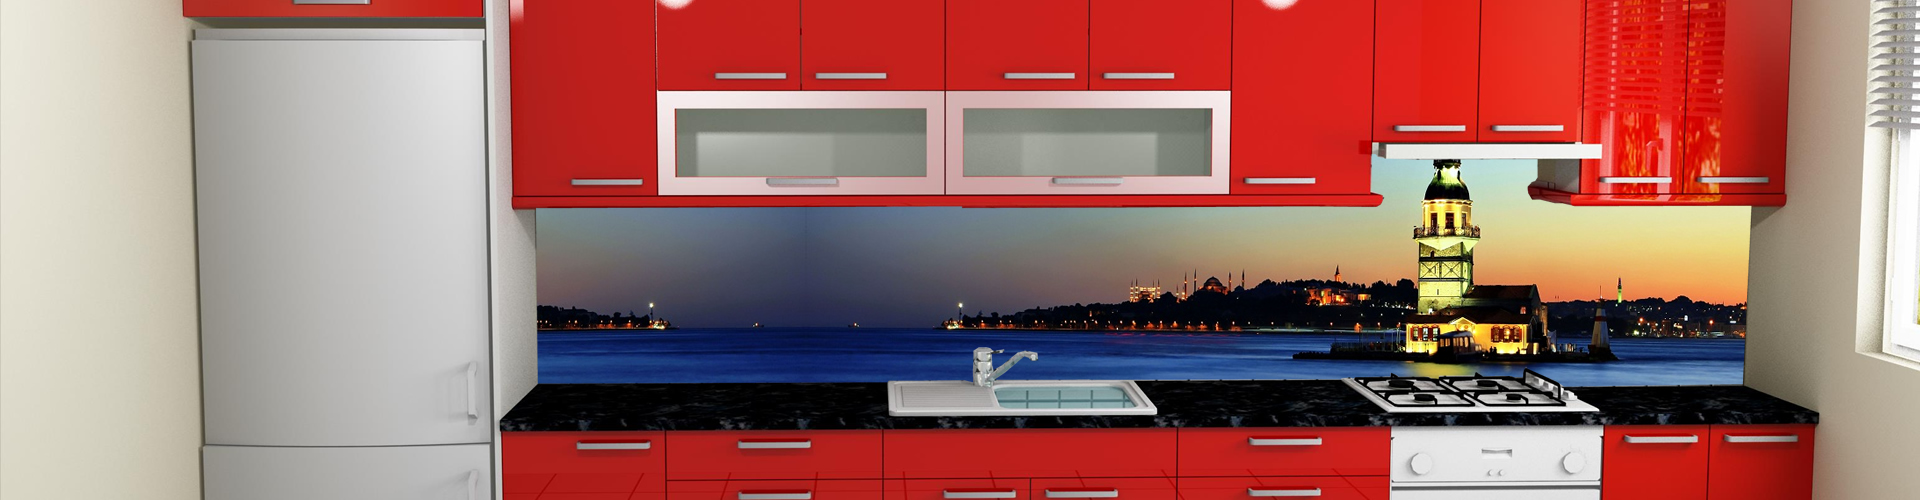 Mutfak tezgah arasý cam panel uygulamalarý